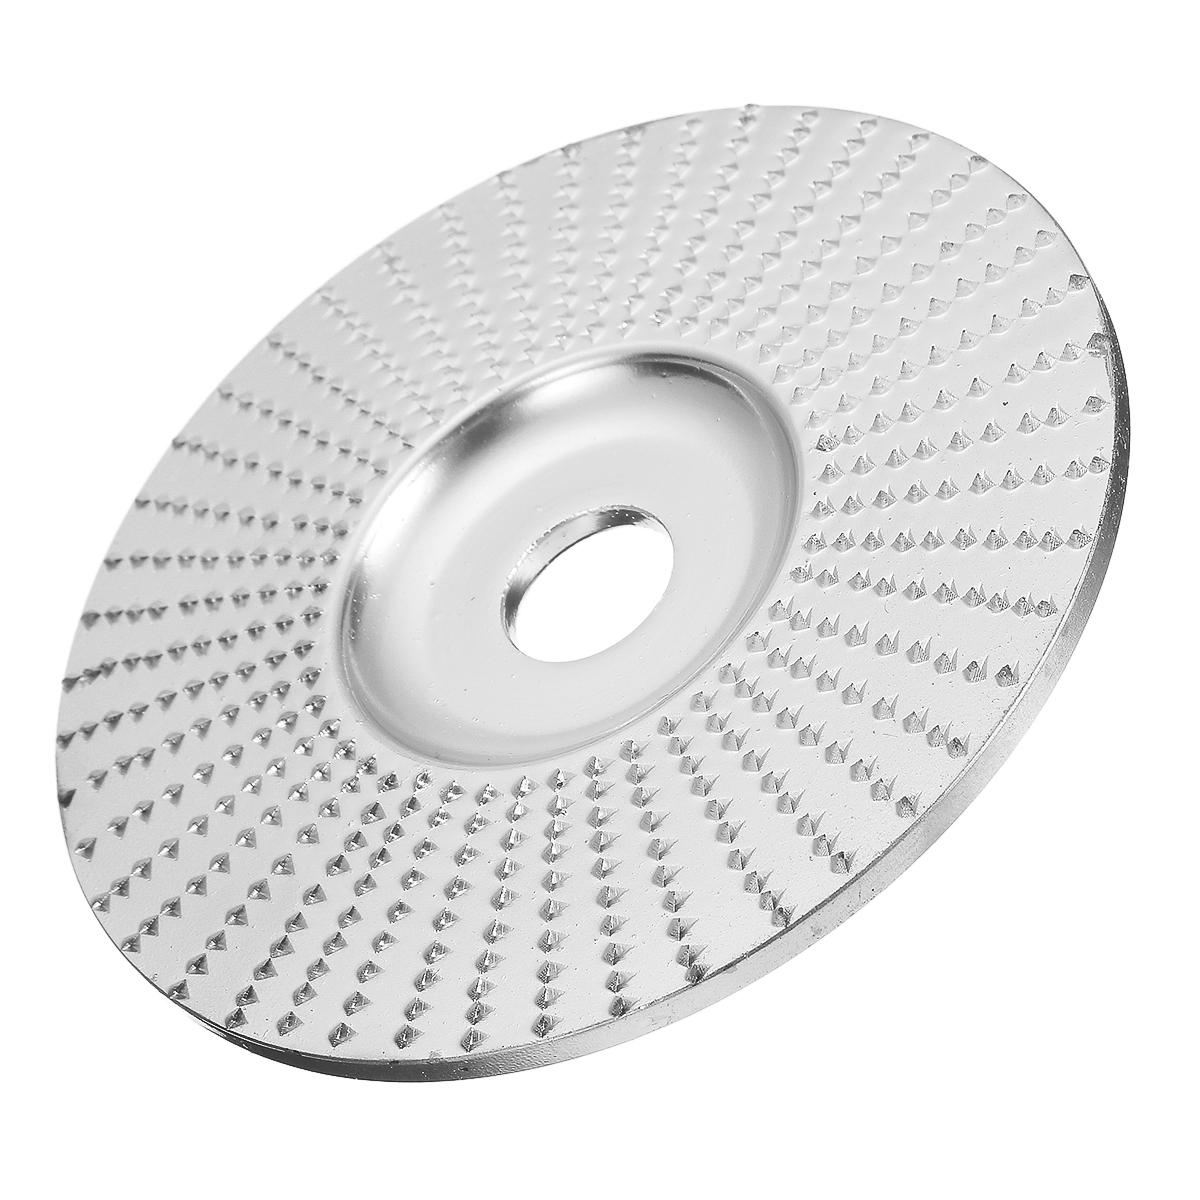 

100x16 мм хромированная резьба по дереву шлифовальный круг шлифовальный абразивный диск для угловых шлифовальных машин